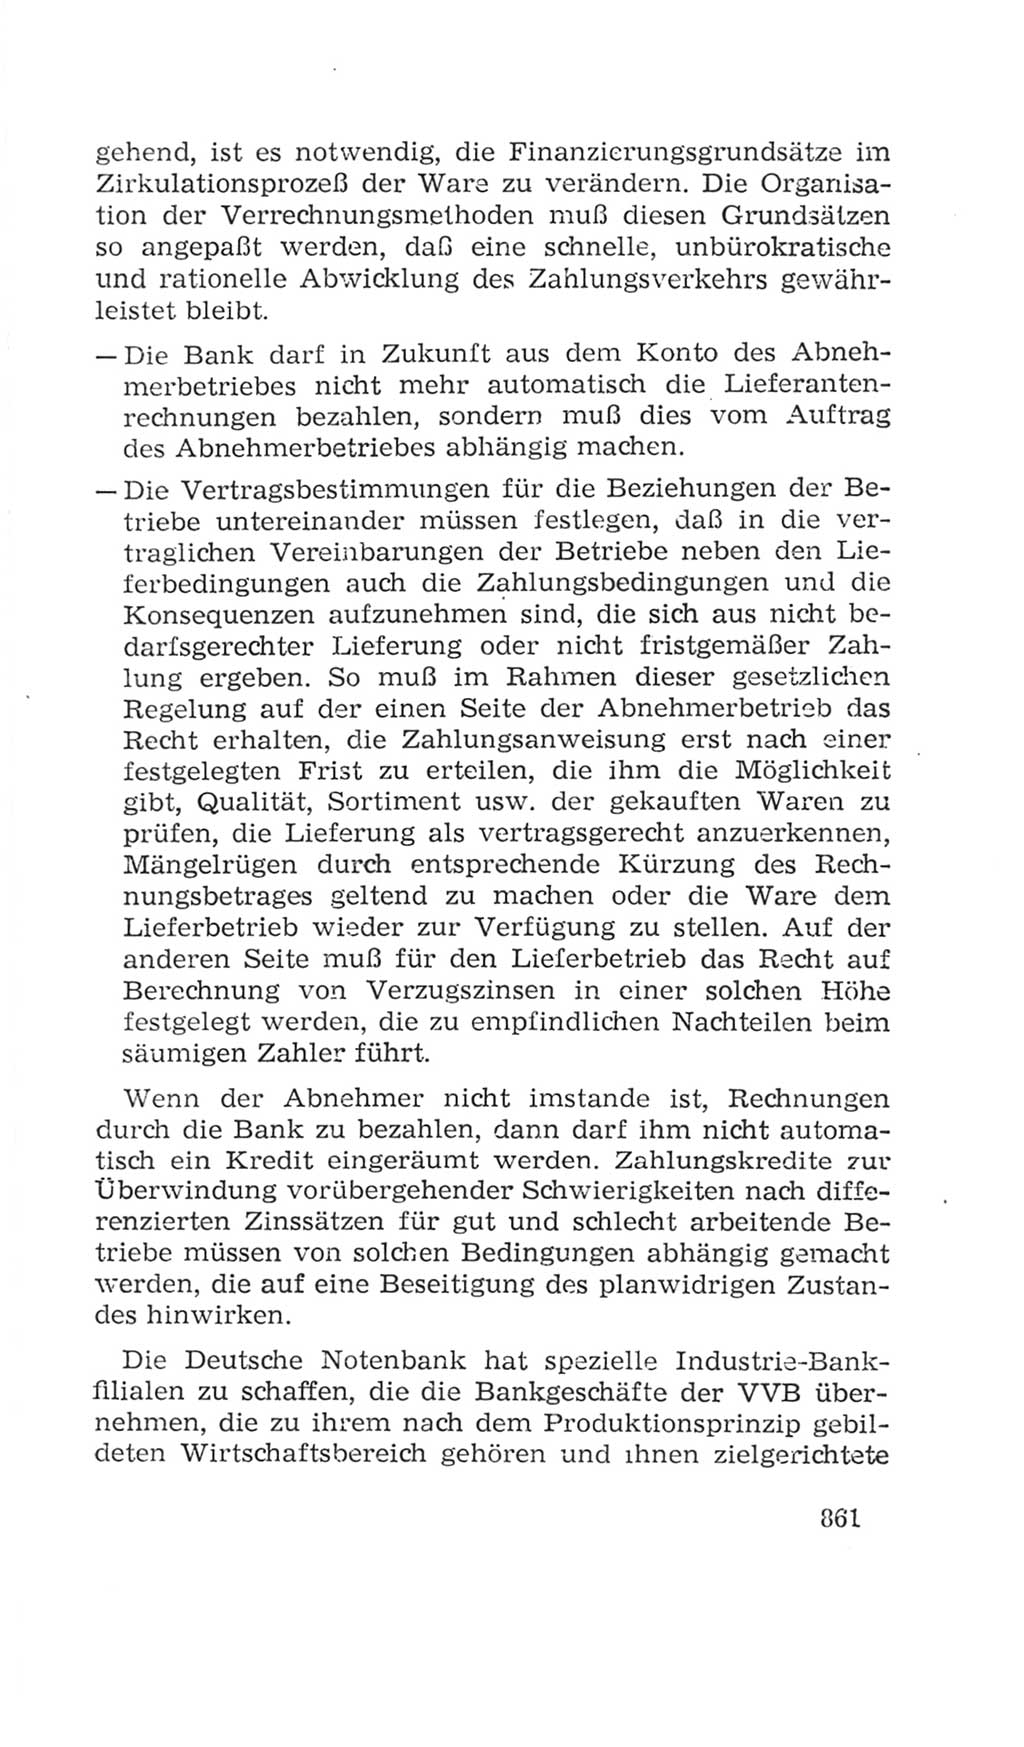 Volkskammer (VK) der Deutschen Demokratischen Republik (DDR), 4. Wahlperiode 1963-1967, Seite 861 (VK. DDR 4. WP. 1963-1967, S. 861)